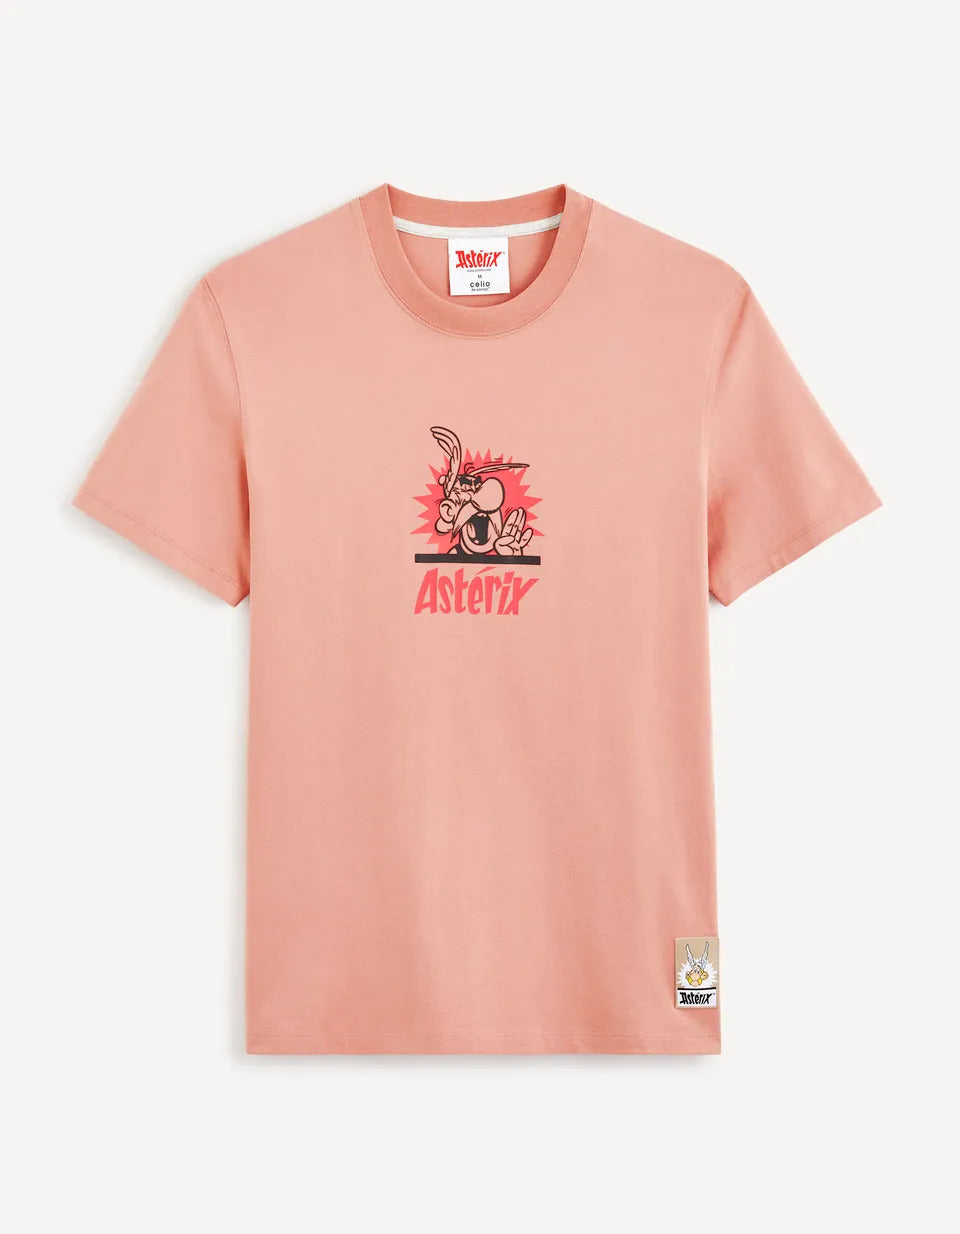 Asterix - T-Shirt - 04